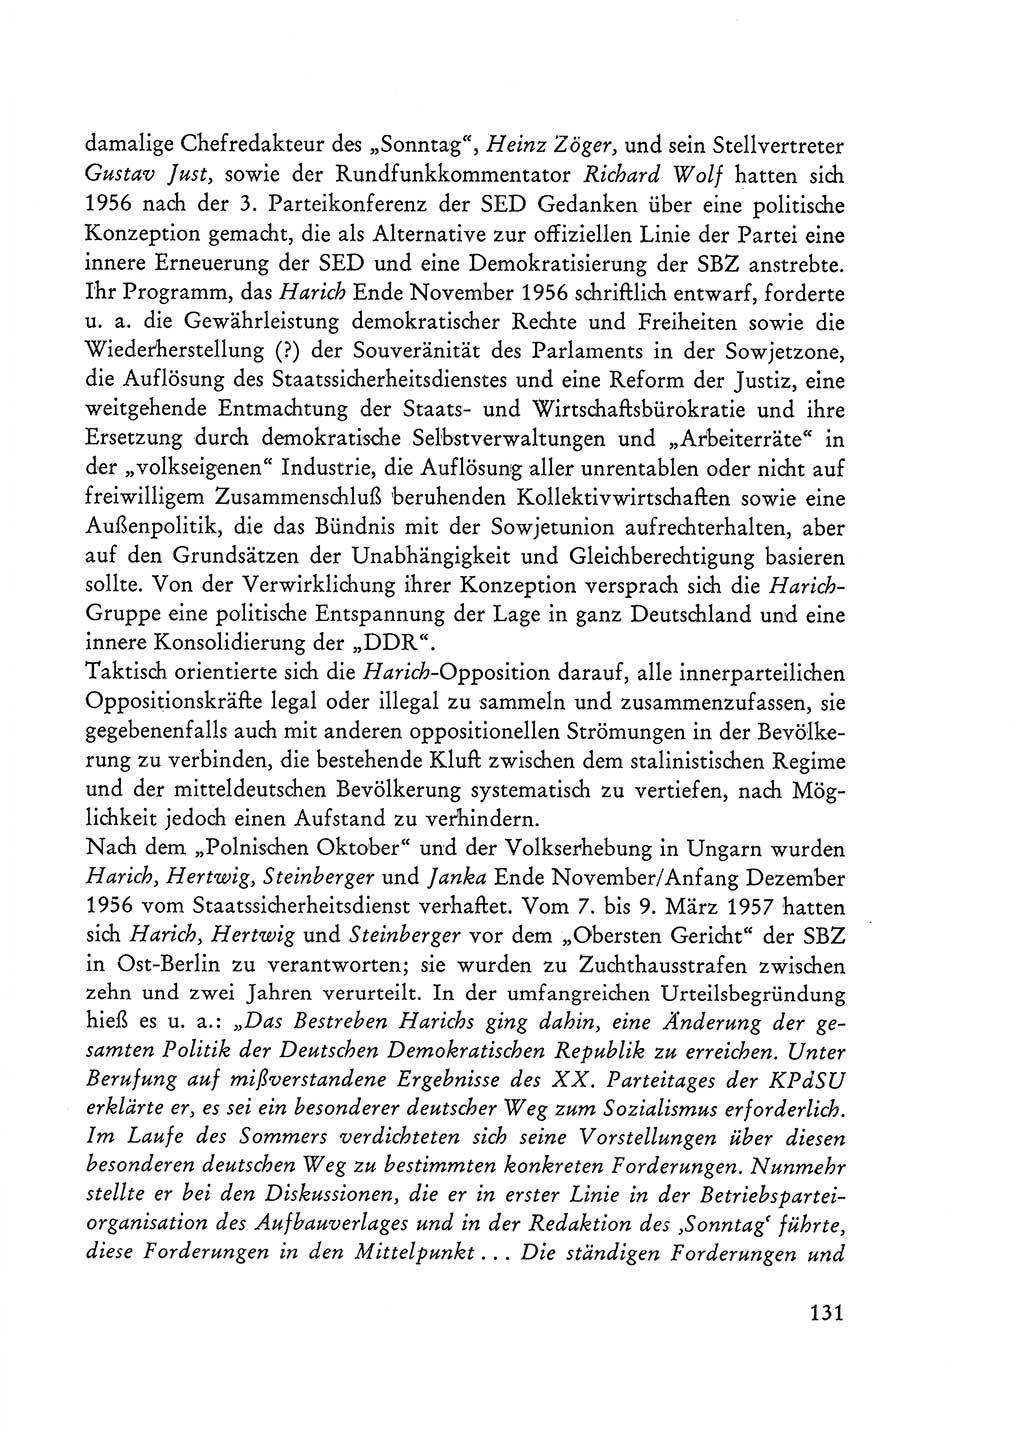 Selbstbehauptung und Widerstand in der Sowjetischen Besatzungszone (SBZ) Deutschlands [Deutsche Demokratische Republik (DDR)] 1964, Seite 131 (Selbstbeh. Wdst. SBZ Dtl. DDR 1964, S. 131)